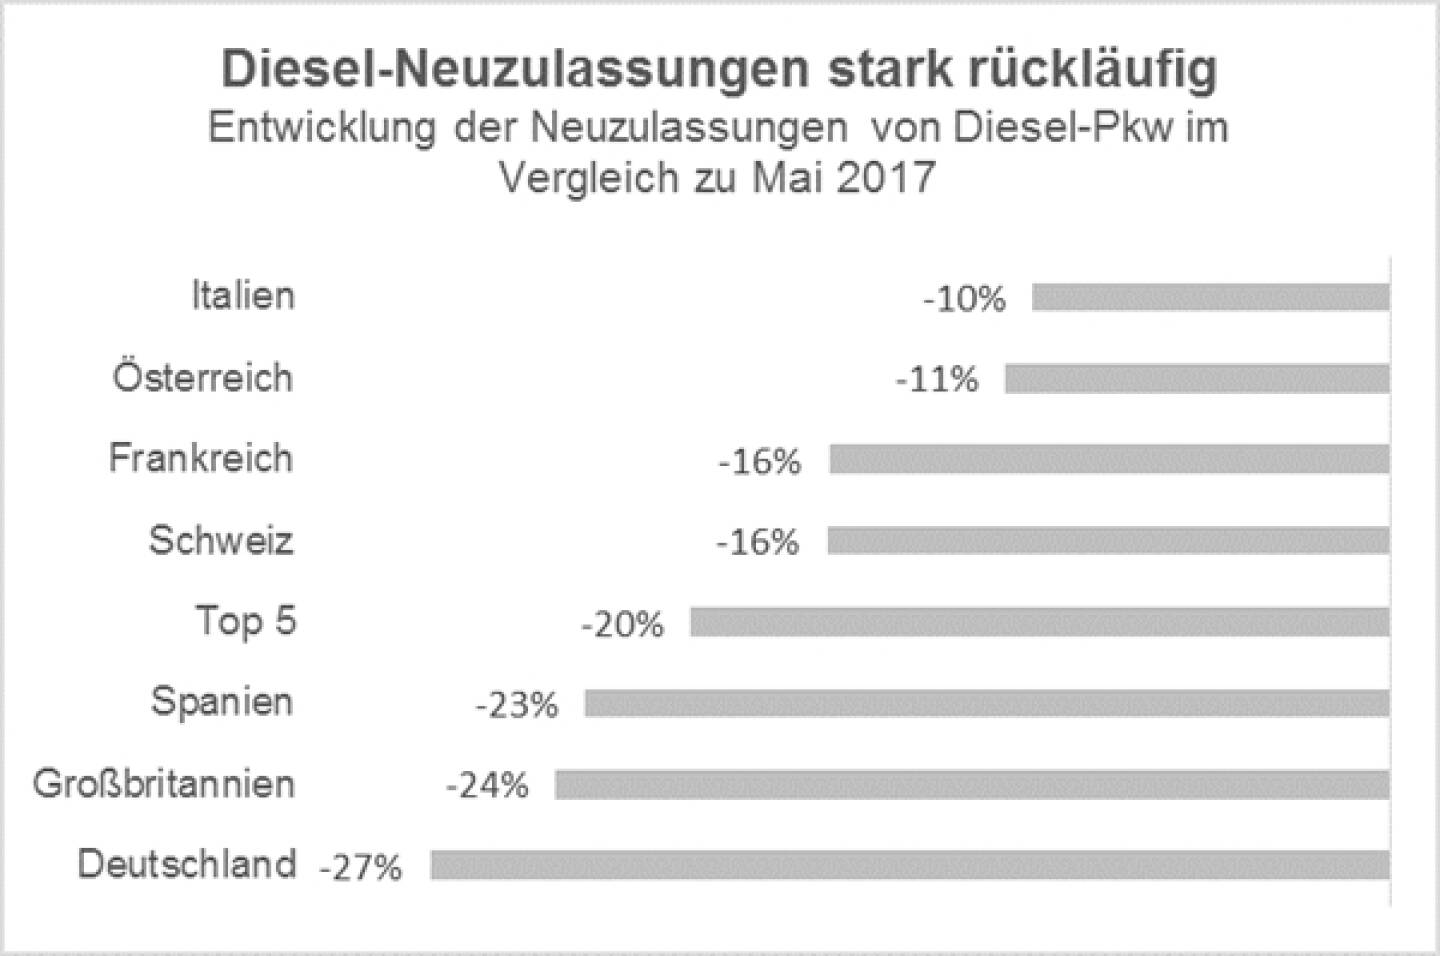 EY Automotive Analyse: EU-Neuwagenmarkt klettert im Mai auf 11-Jahres-Hoch – Diesel verliert weiter massiv Marktanteile; Credit: EY